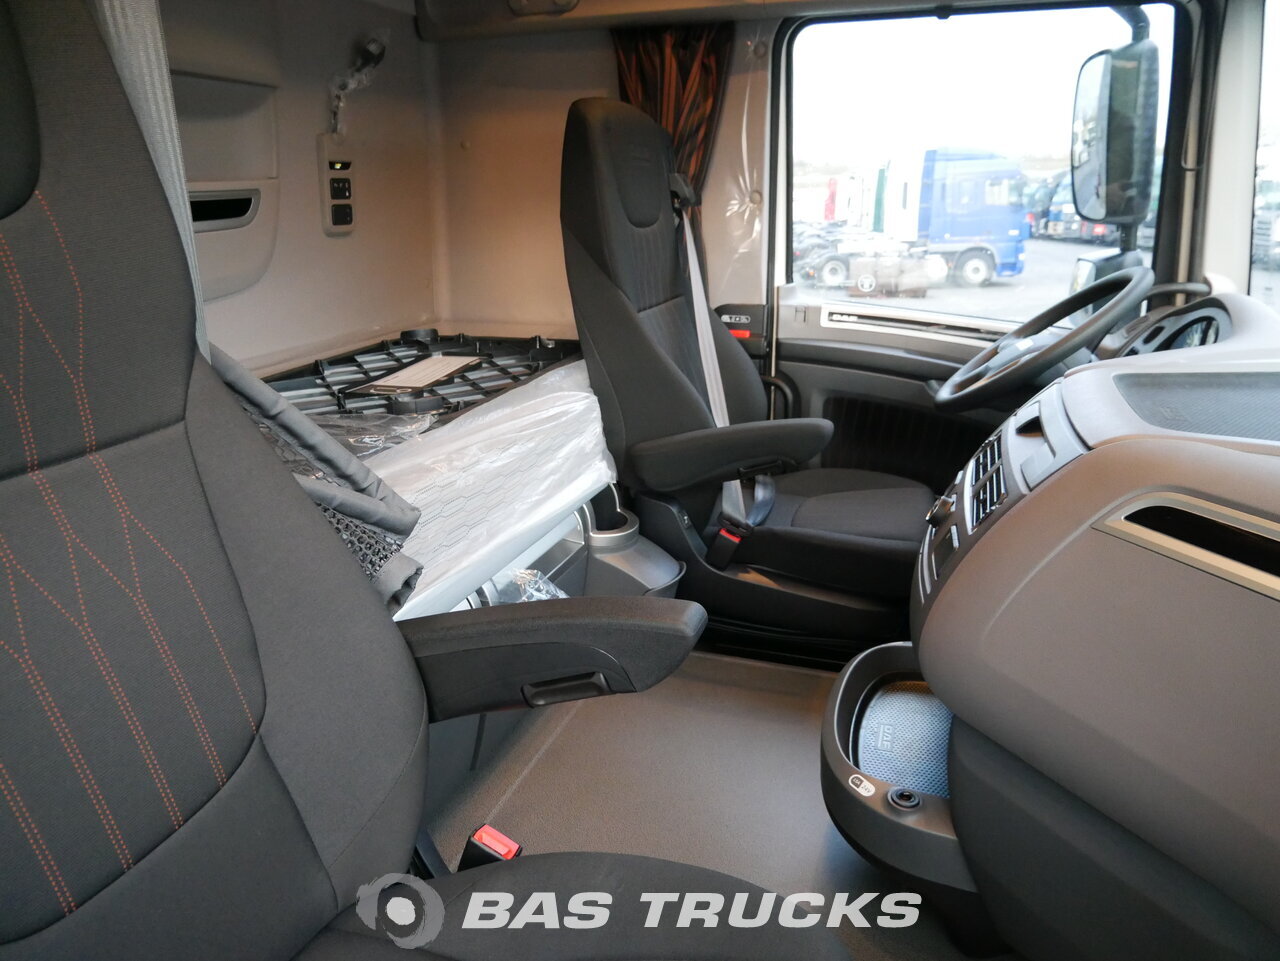 Daf Xf 106 Super Space Cab Interior Designcivique